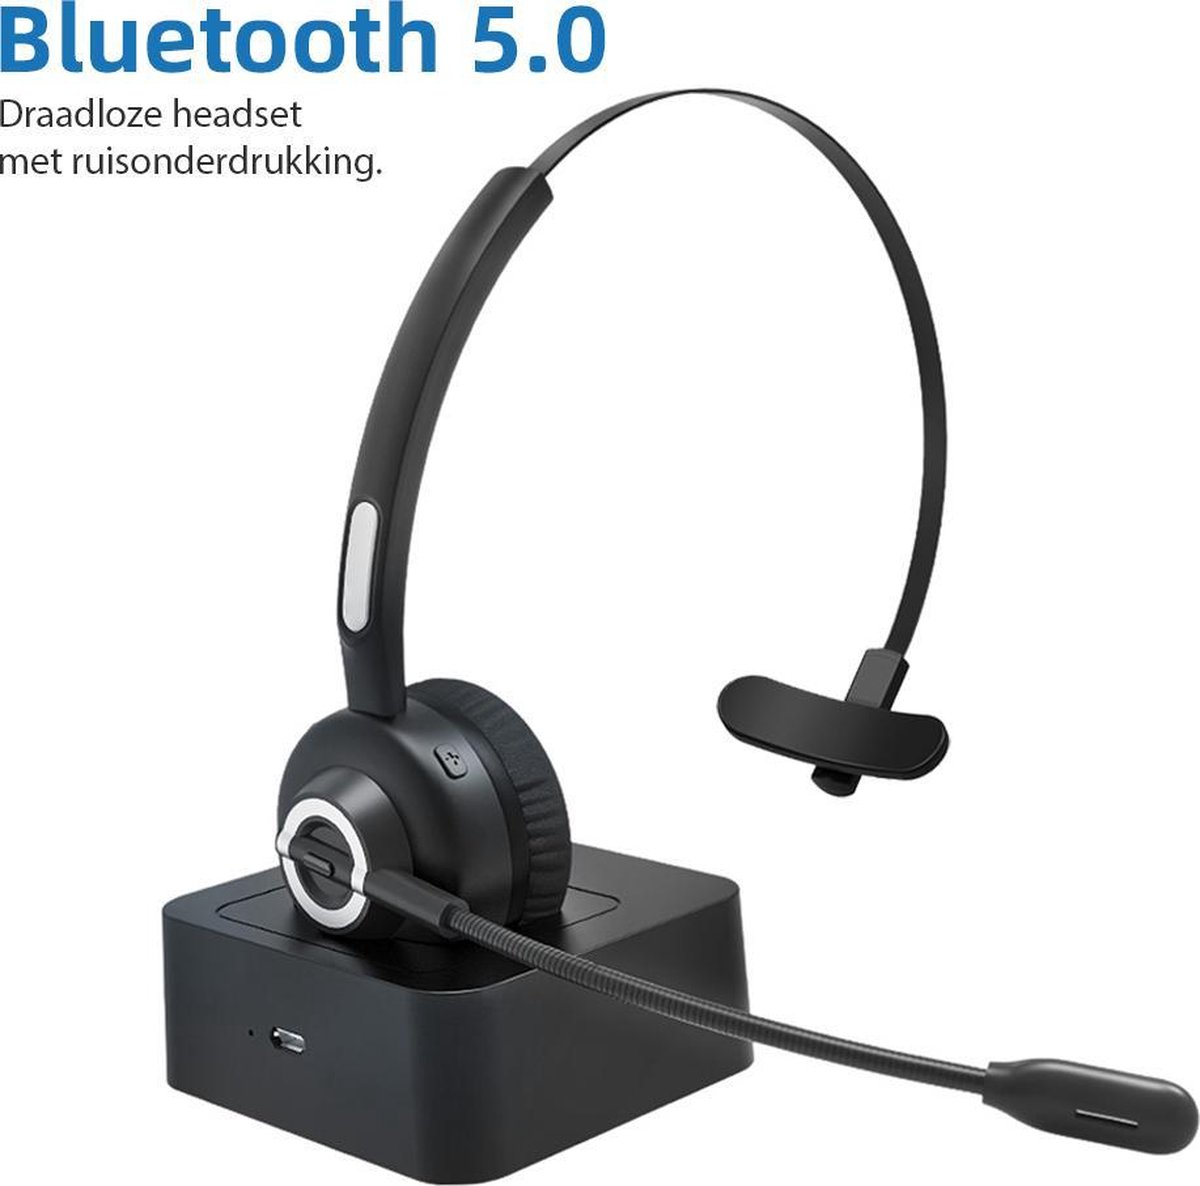 Professionele Headset met Microfoon van Versteeg – Bluetooth 5.0 - Koptelefoon - Headset - Headset met bluetooth - Bluetooth koptelefoon - Bluetooth headset - Draadloos met Laadstation – Headset - Microfoon